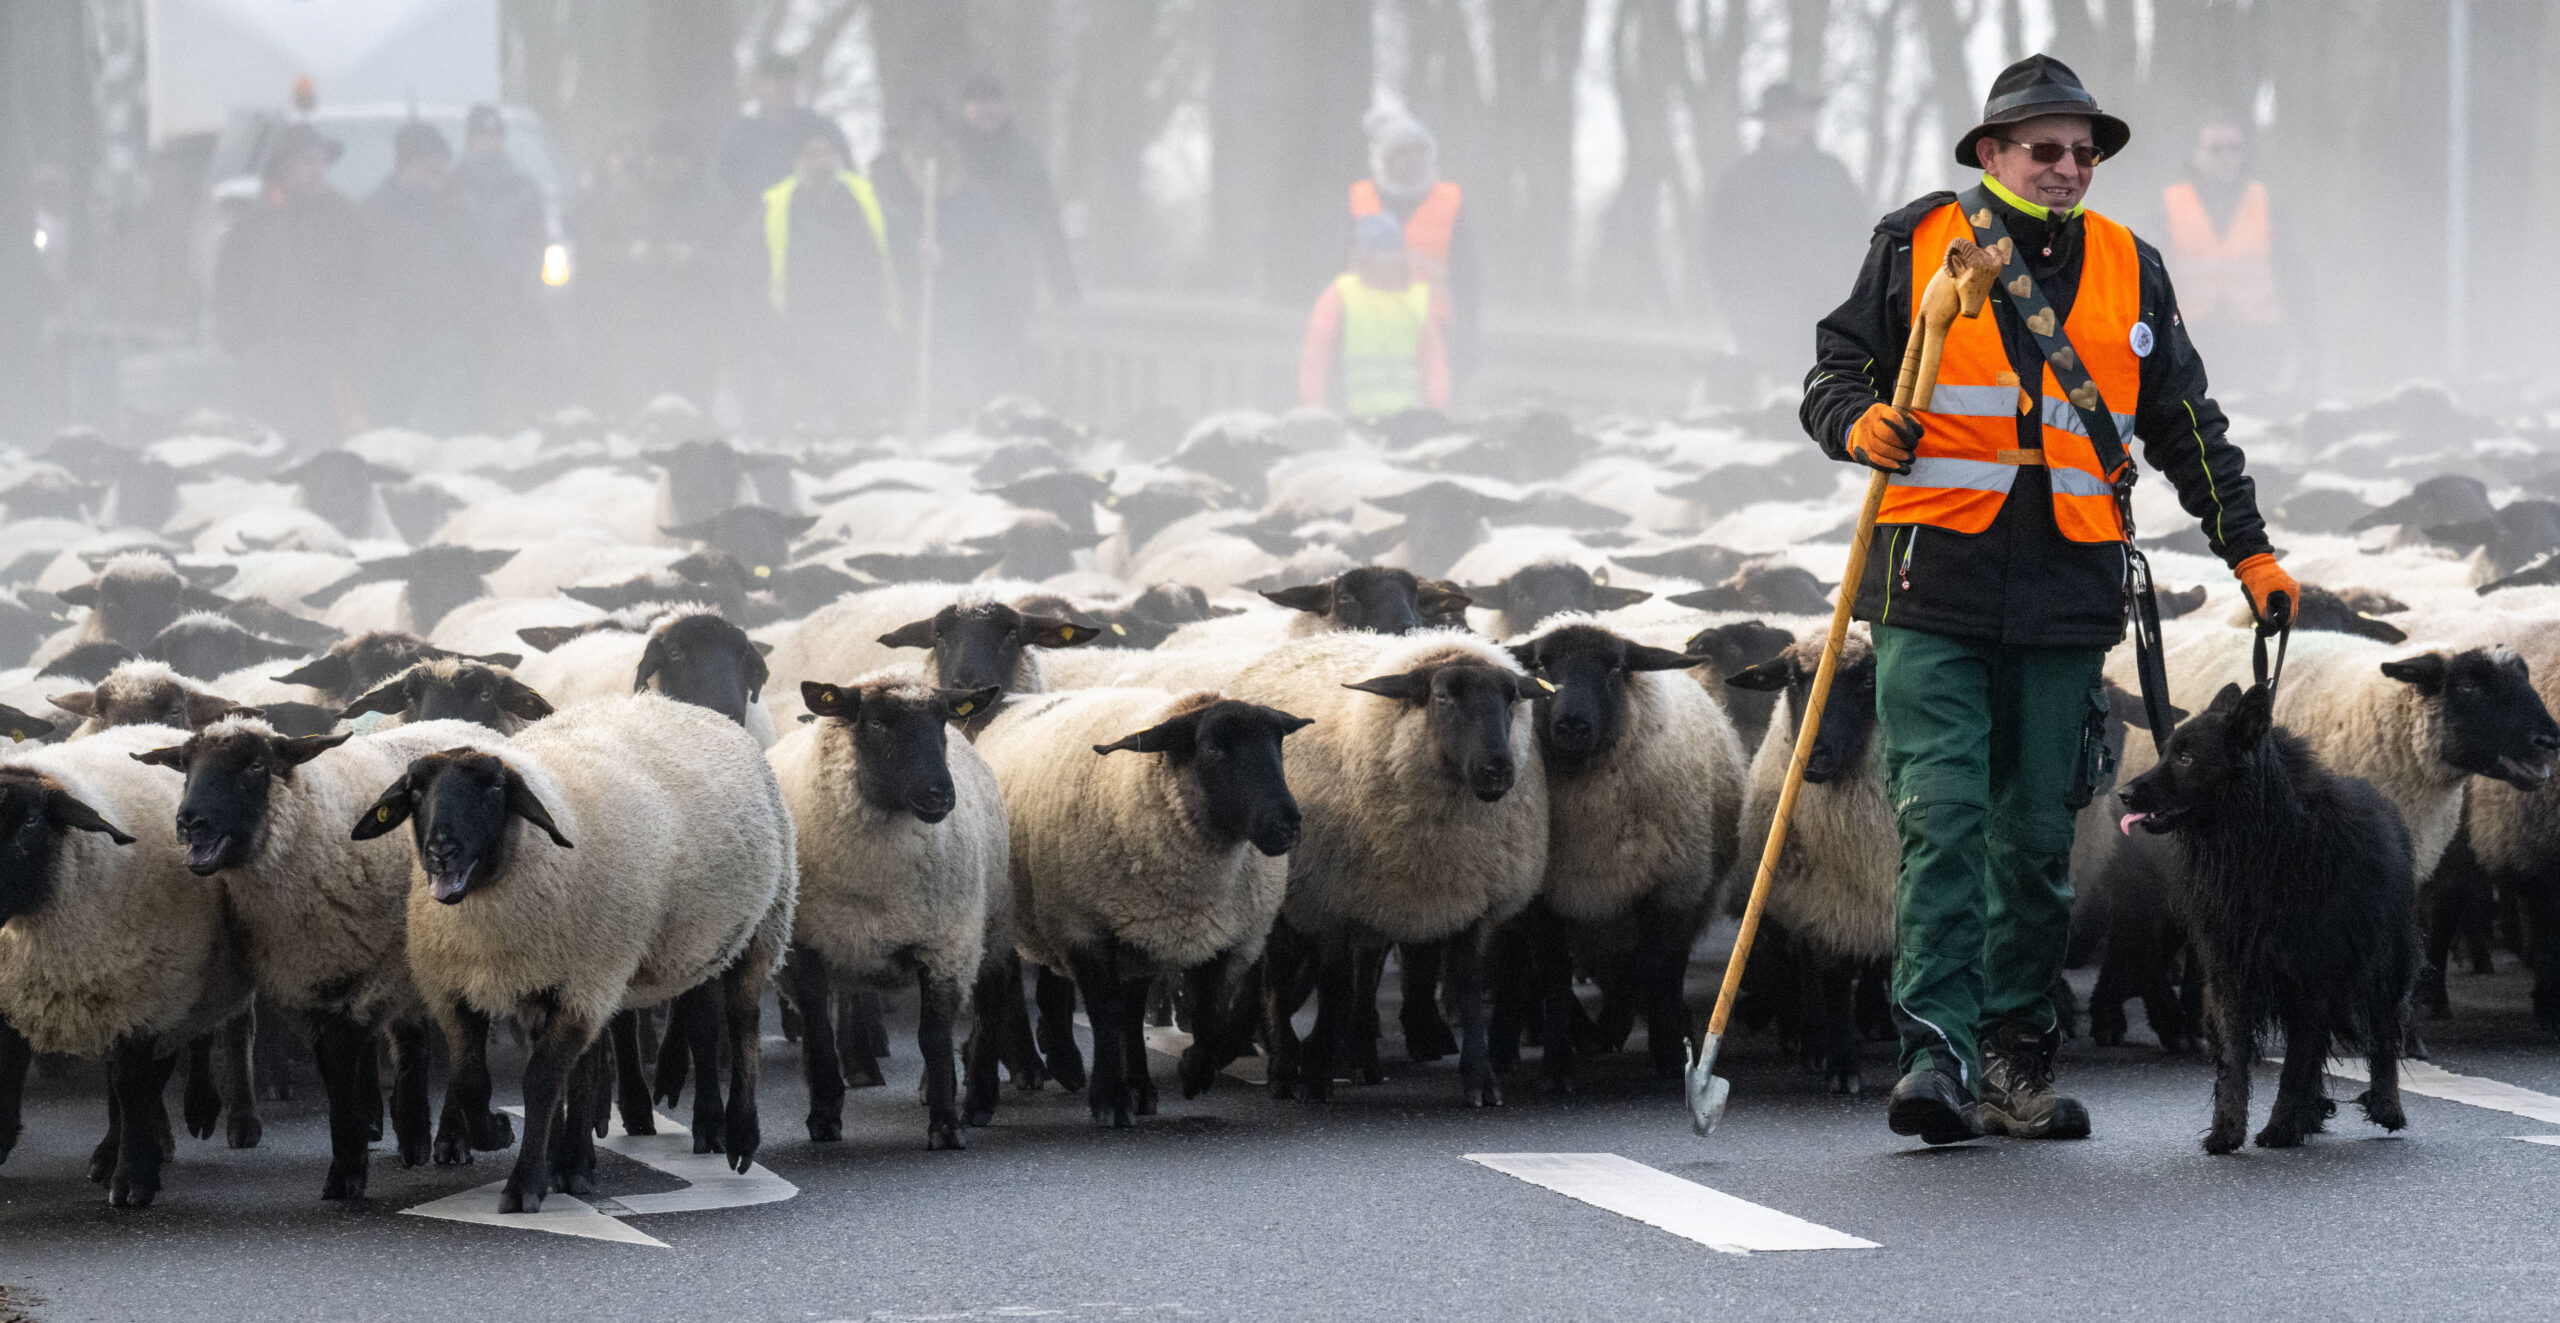 Schäfer Ingo Stoll und zahlreiche Schafe auf einer Straße